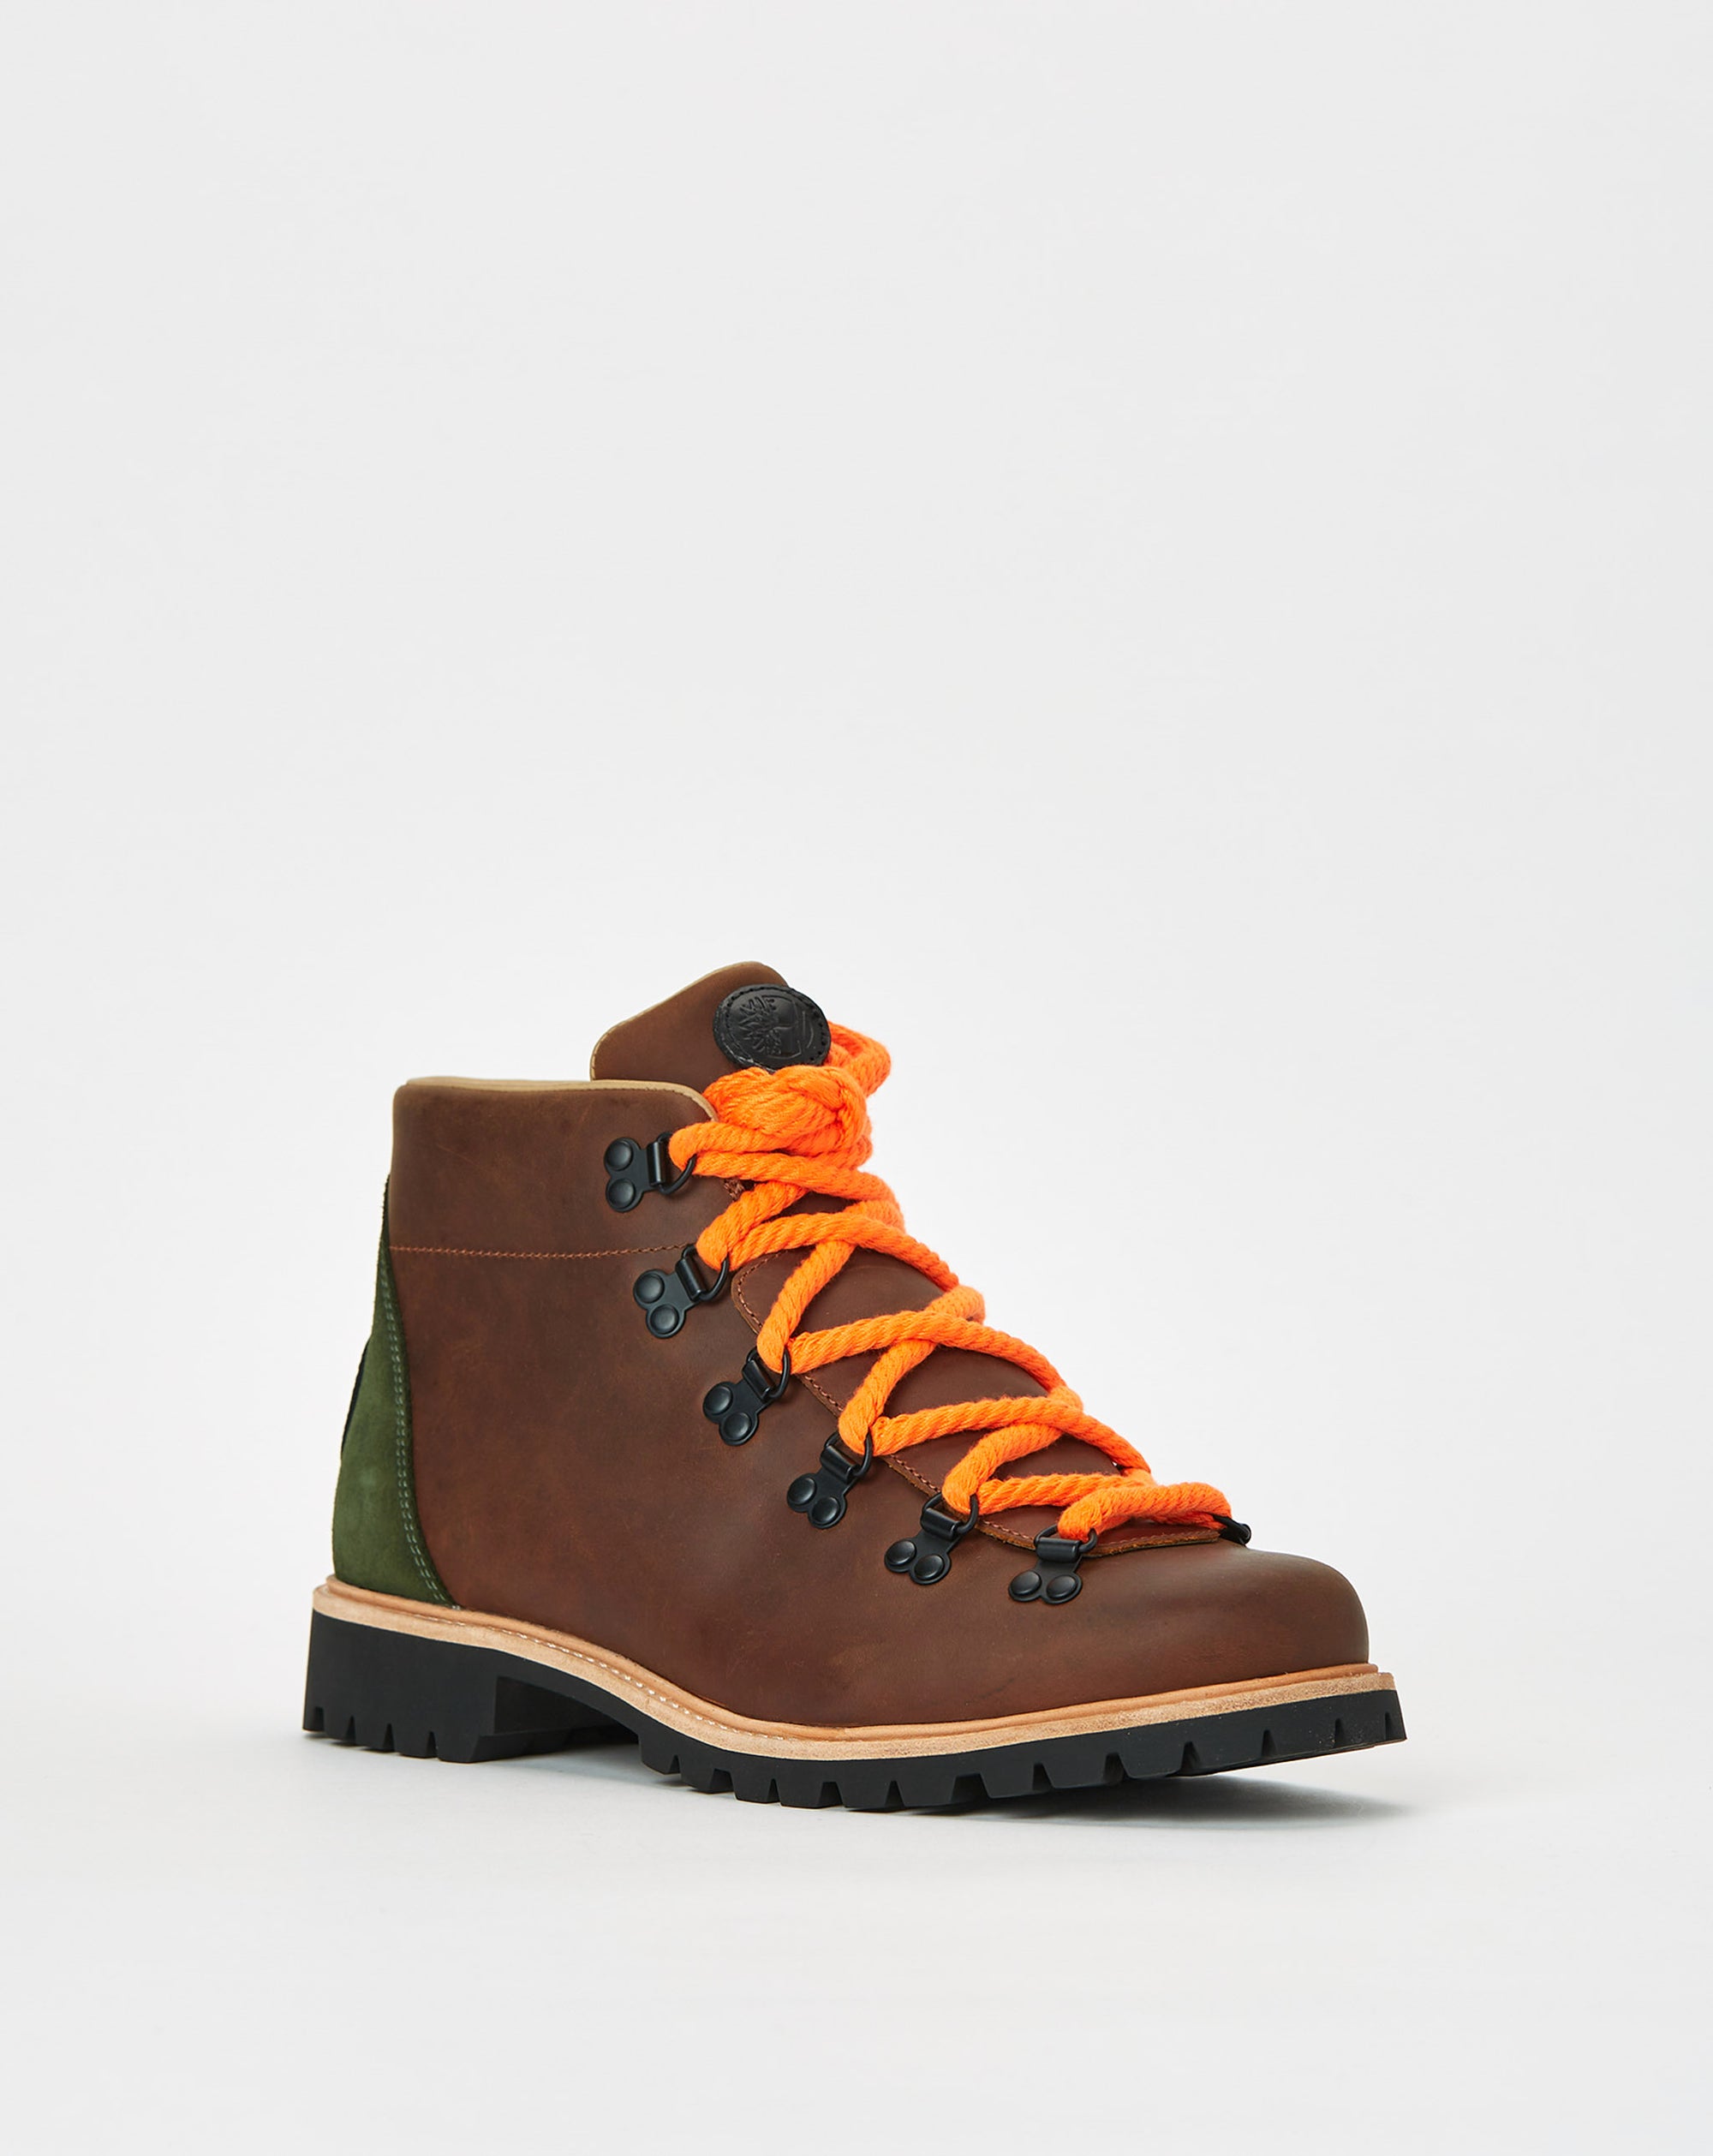 Timberland 78 Hiker - Rule of Next Footwear